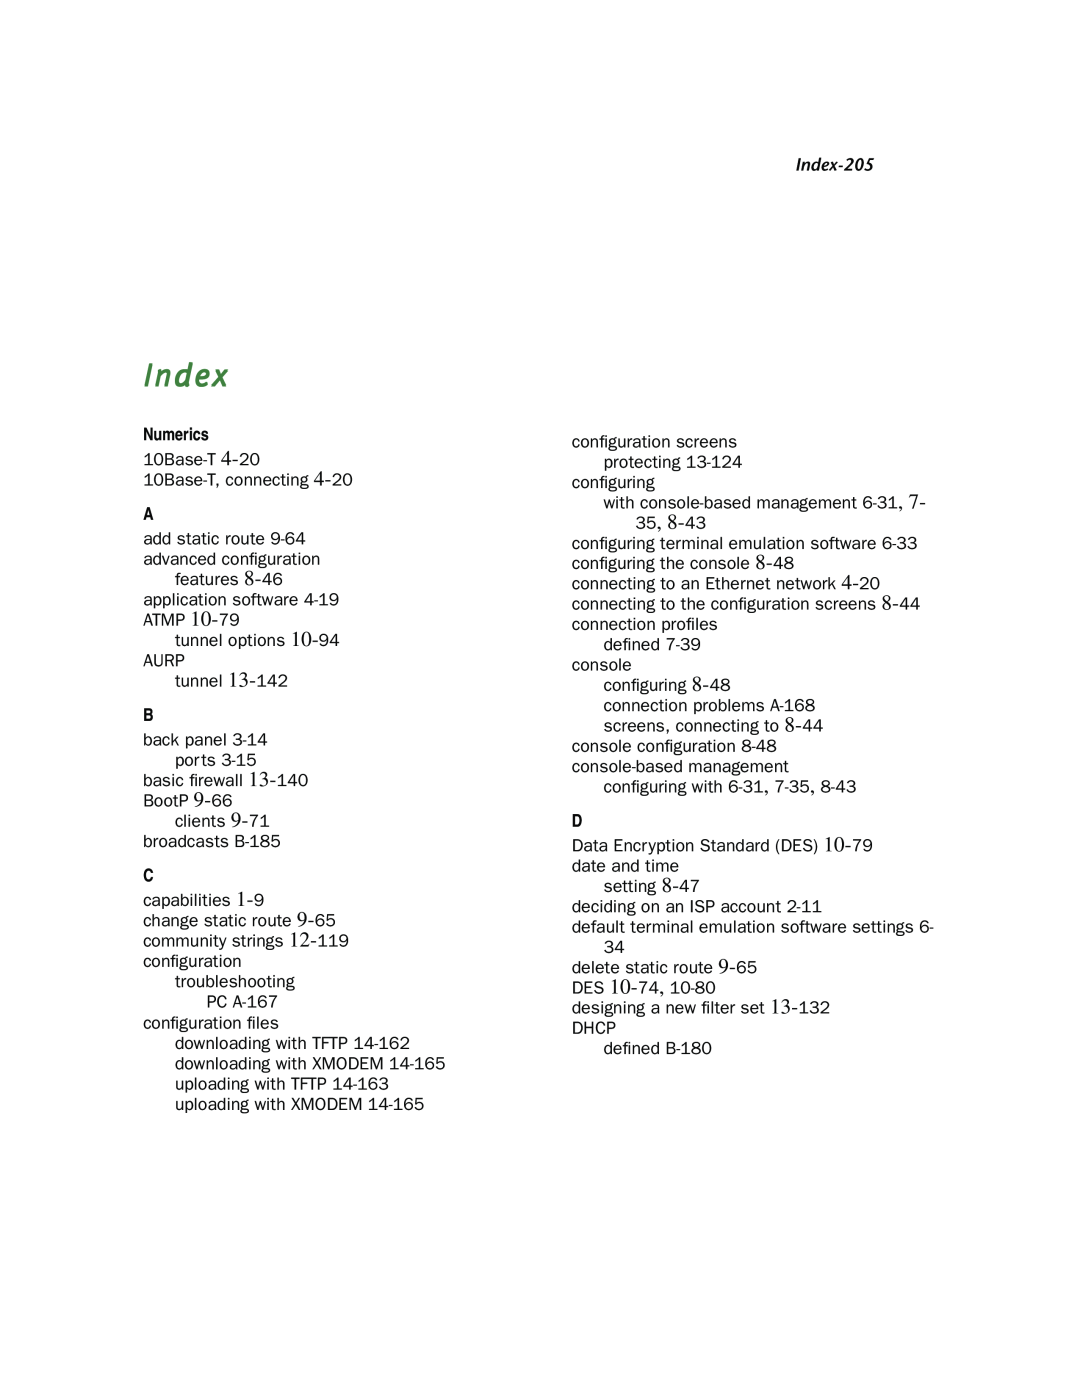 Netopia R910 manual Numerics, Index-205 